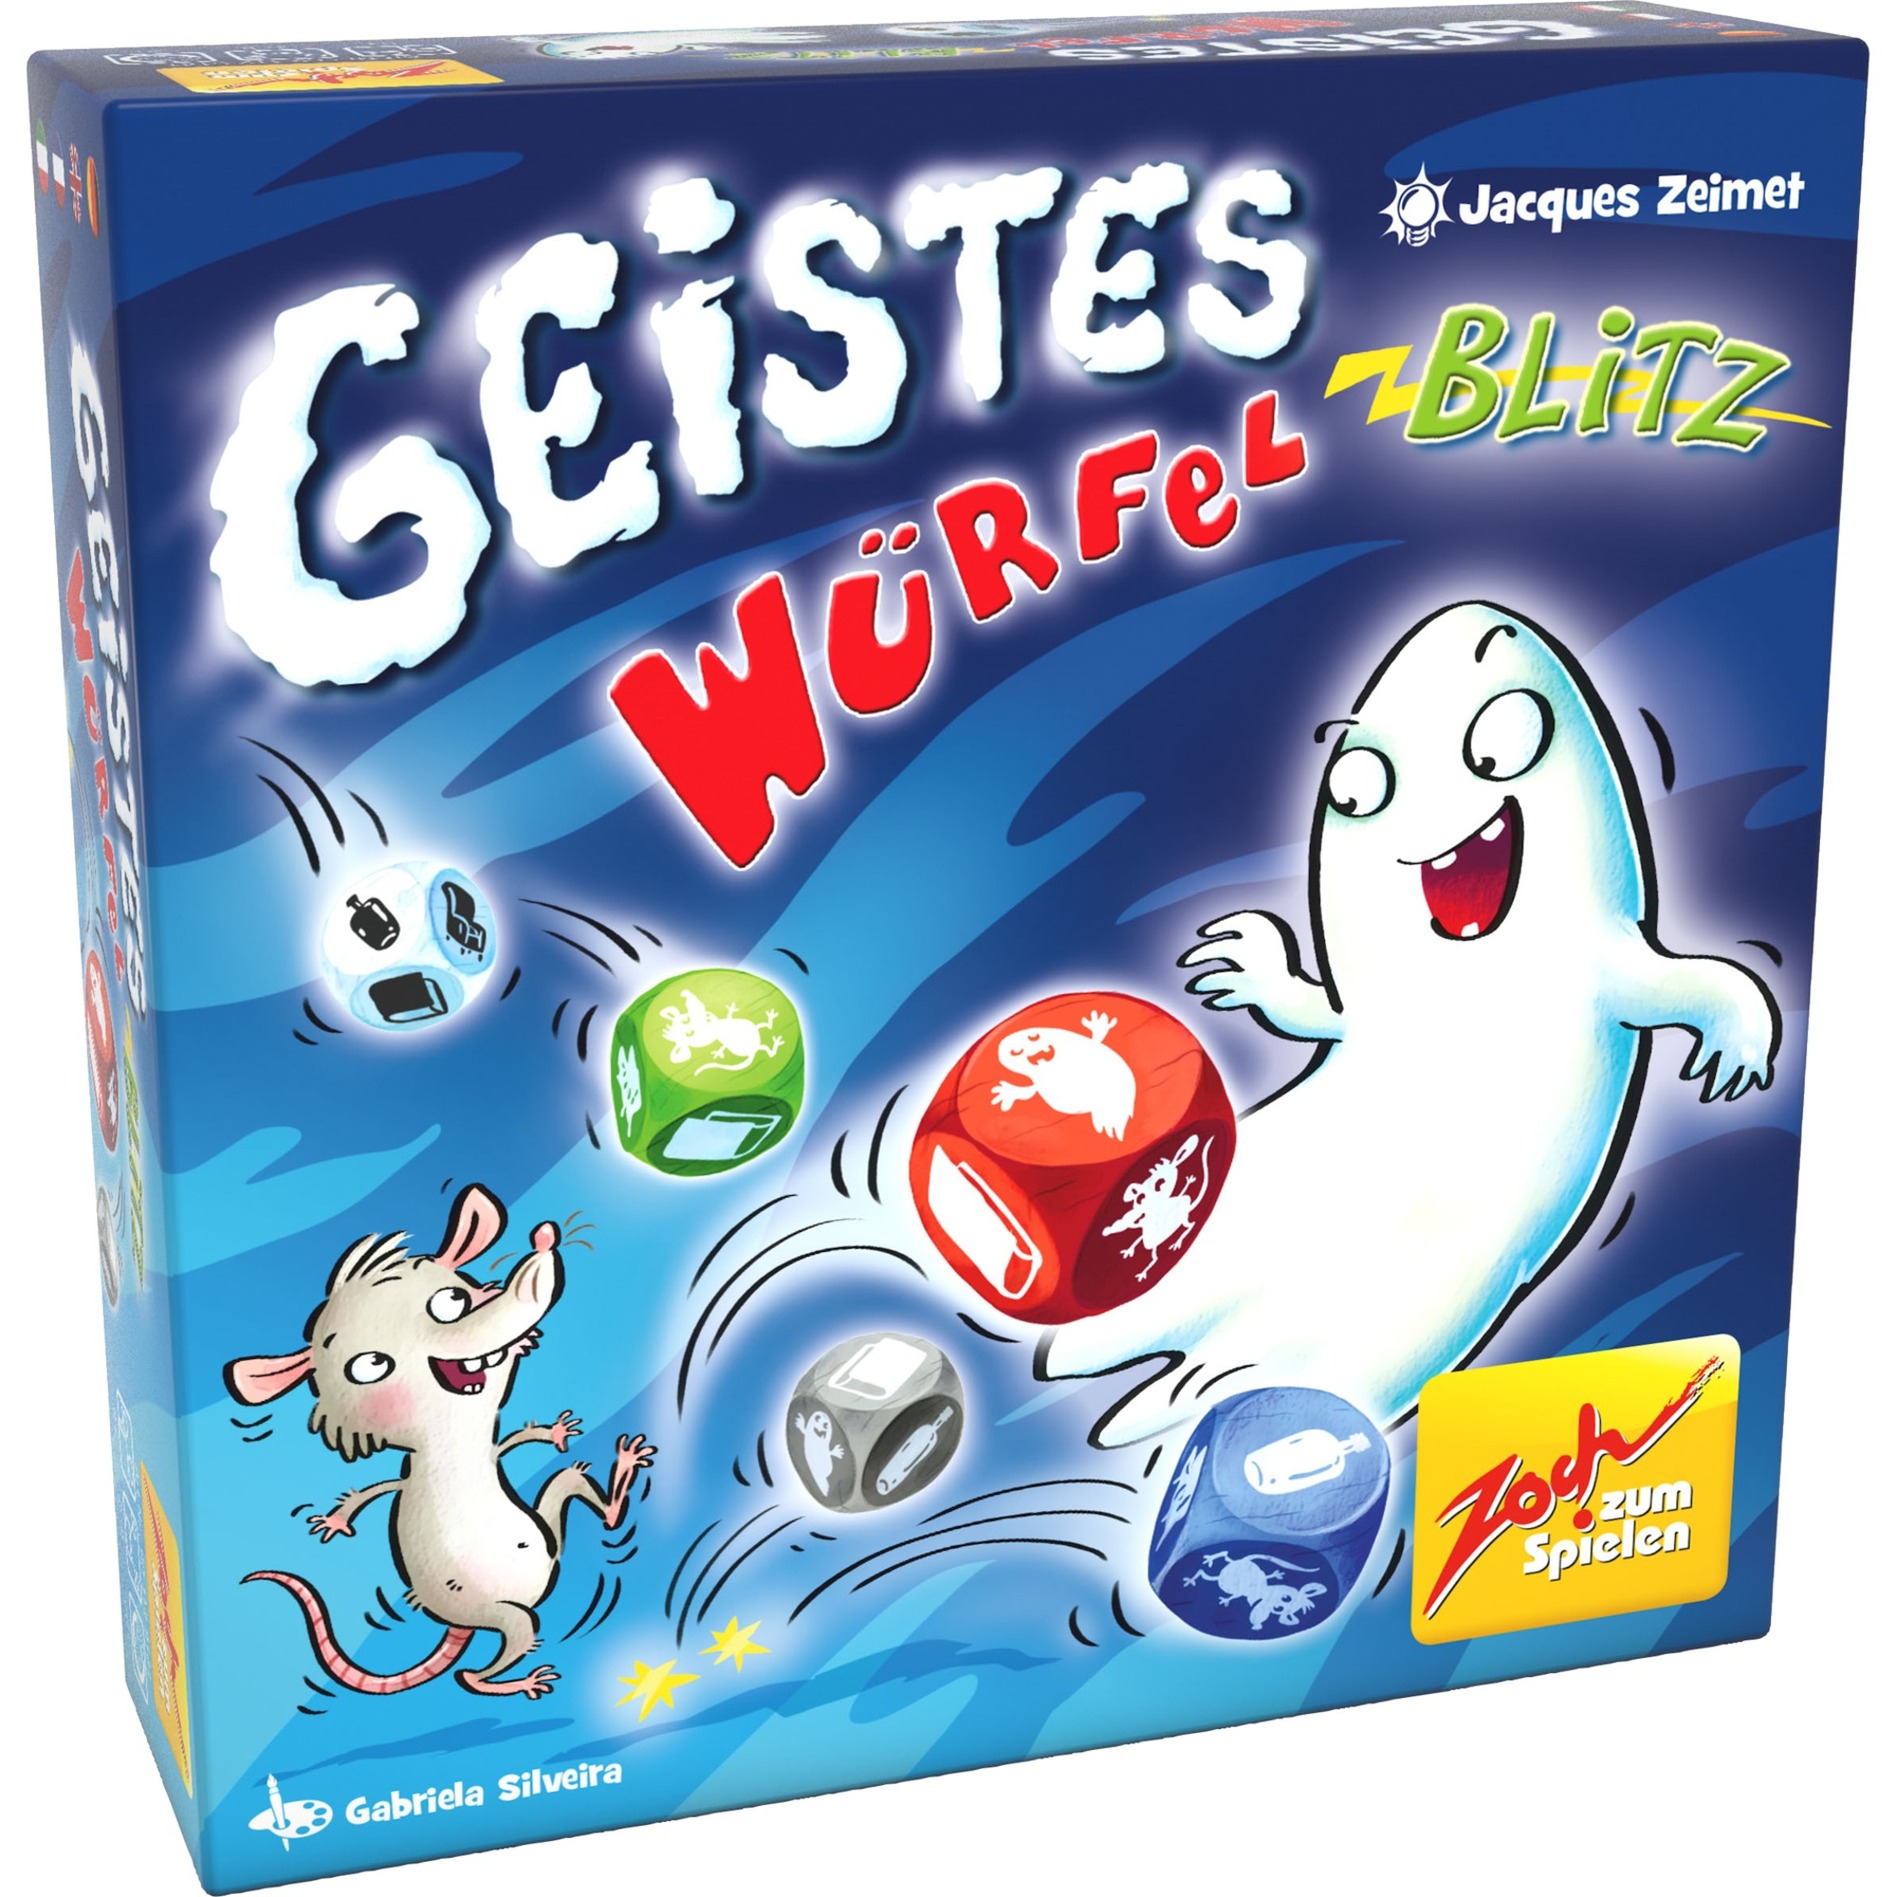 Image of Alternate - Geistesblitz Würfelblitz, Würfelspiel online einkaufen bei Alternate